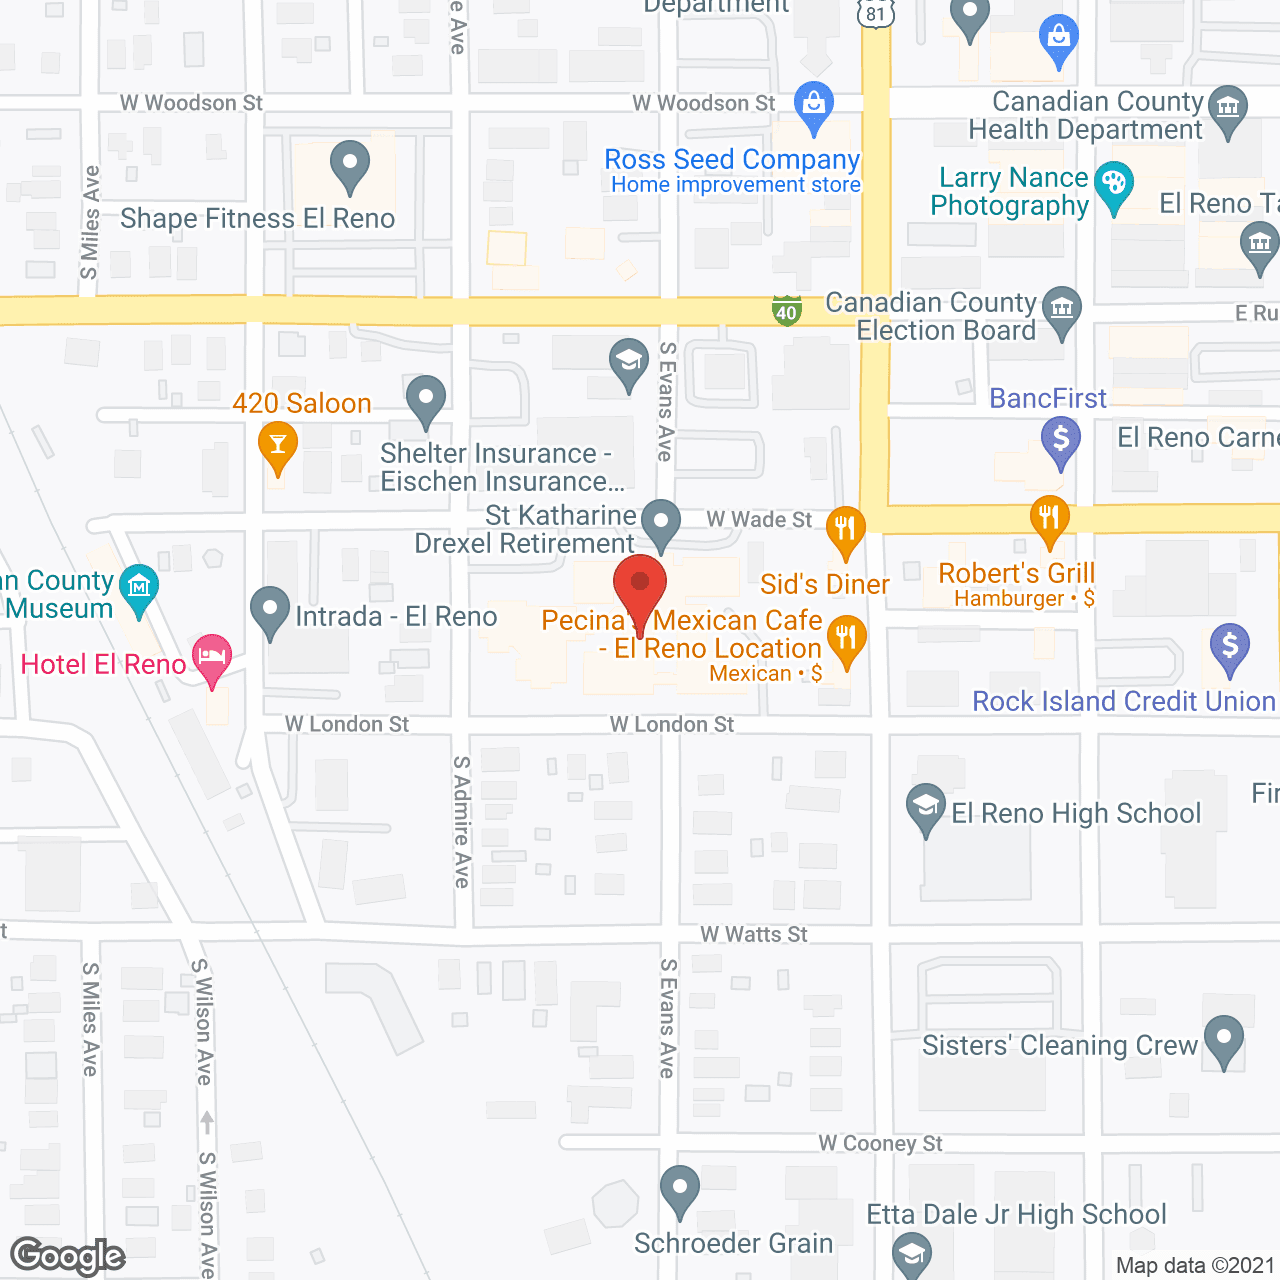 St Katherine Drexel Retirement Center in google map